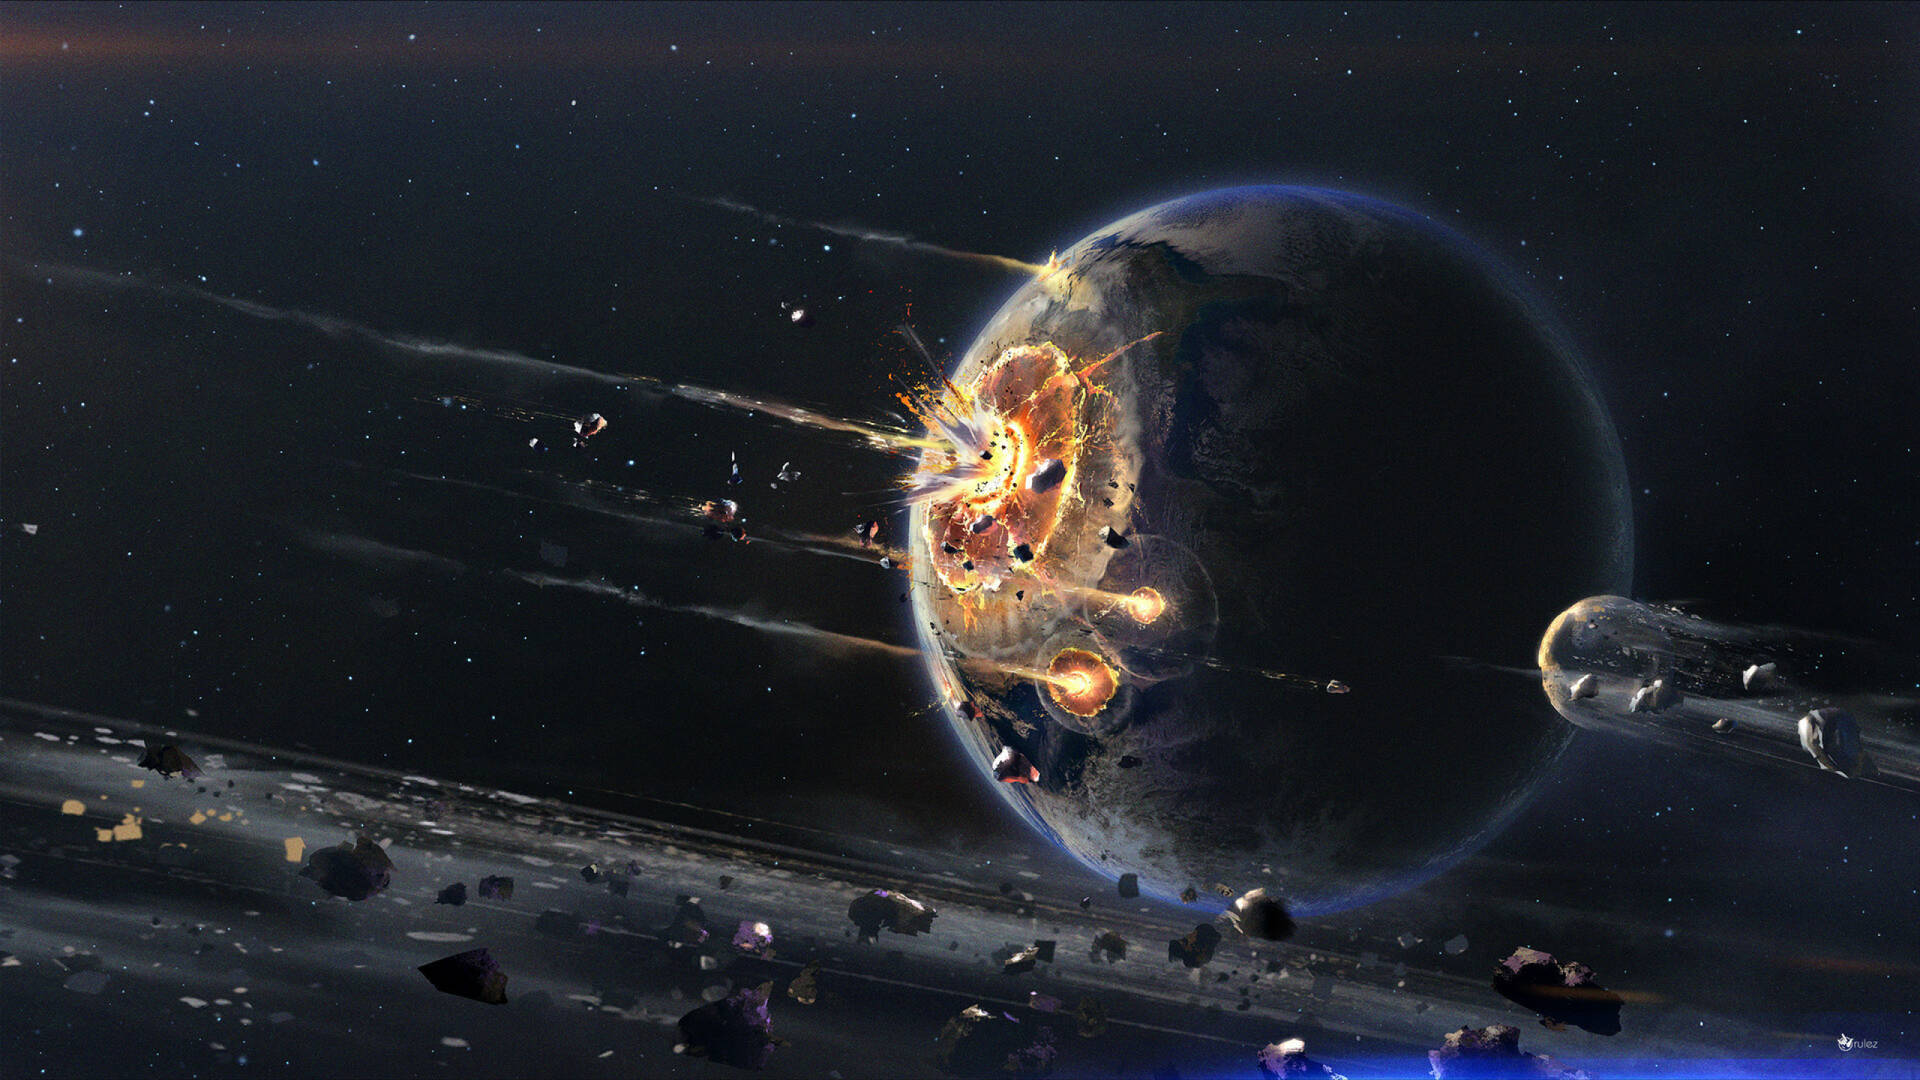 Space Planet Destruction 2560x1440 Wallpaper